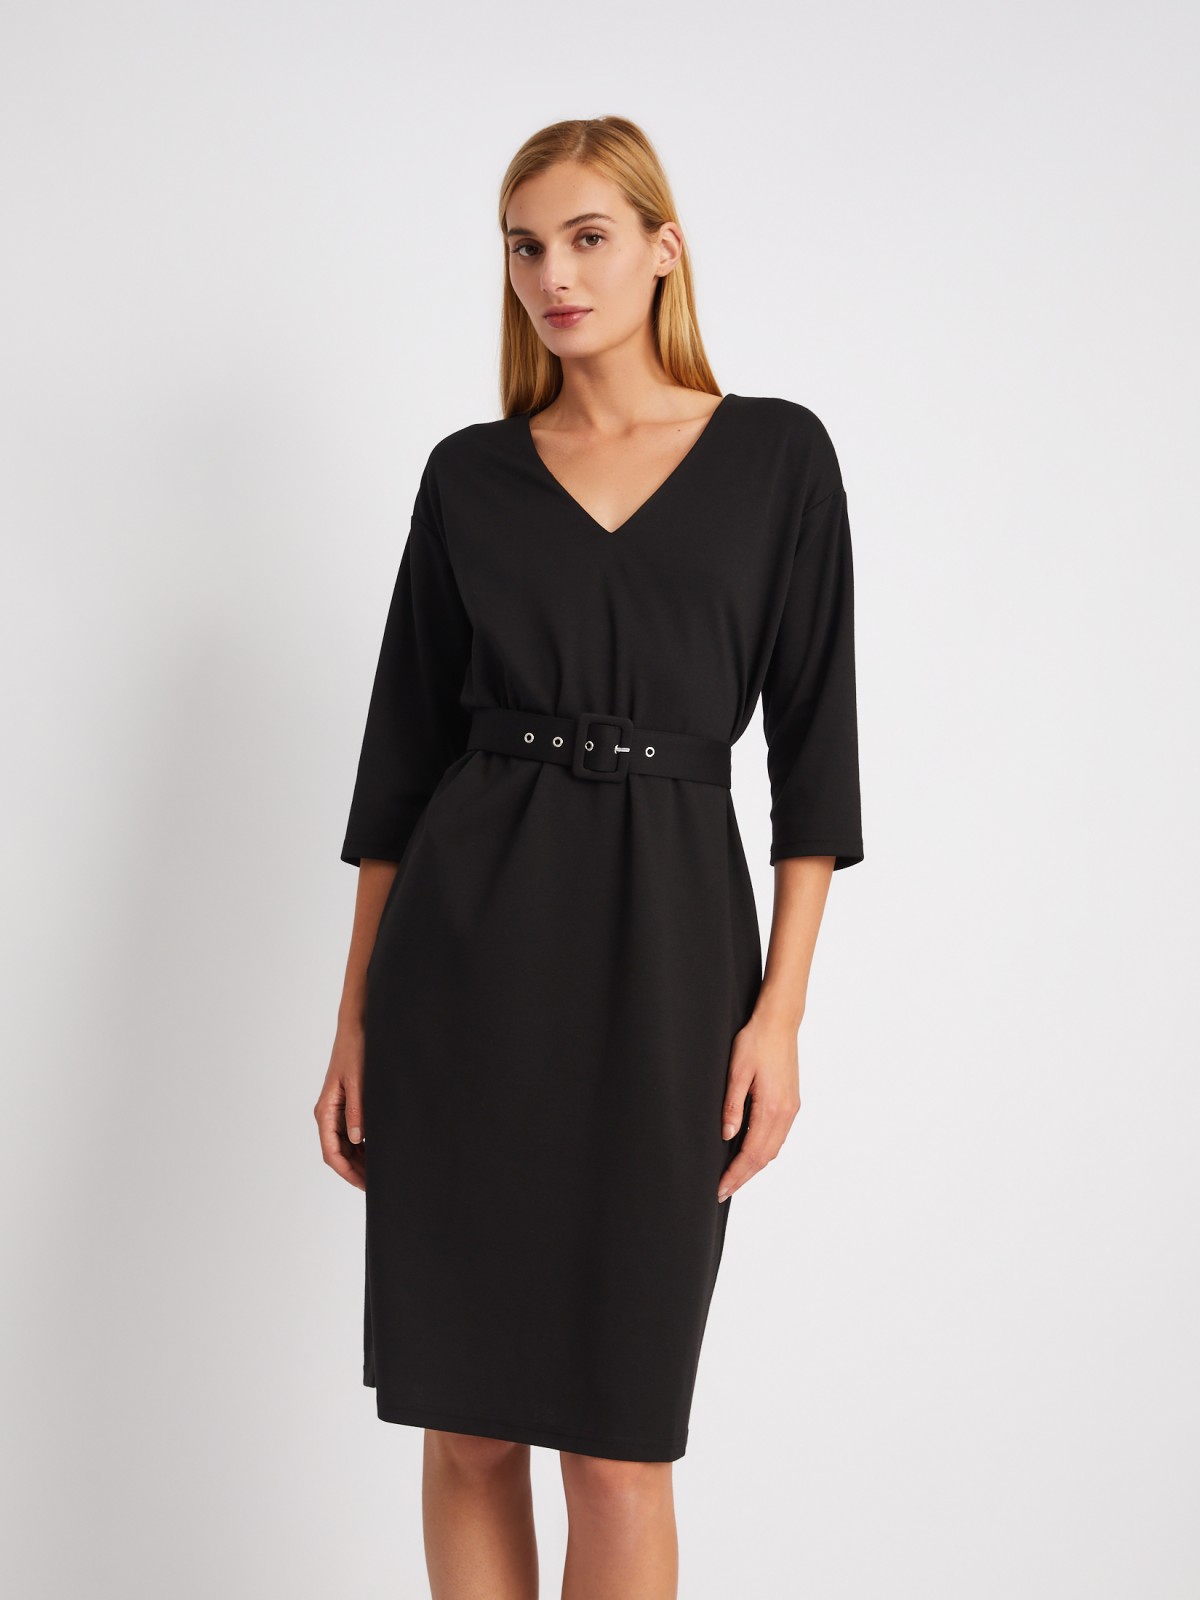 Платье с укороченным рукавом и ремнём на талии zolla 024118139361, цвет черный, размер S - фото 1